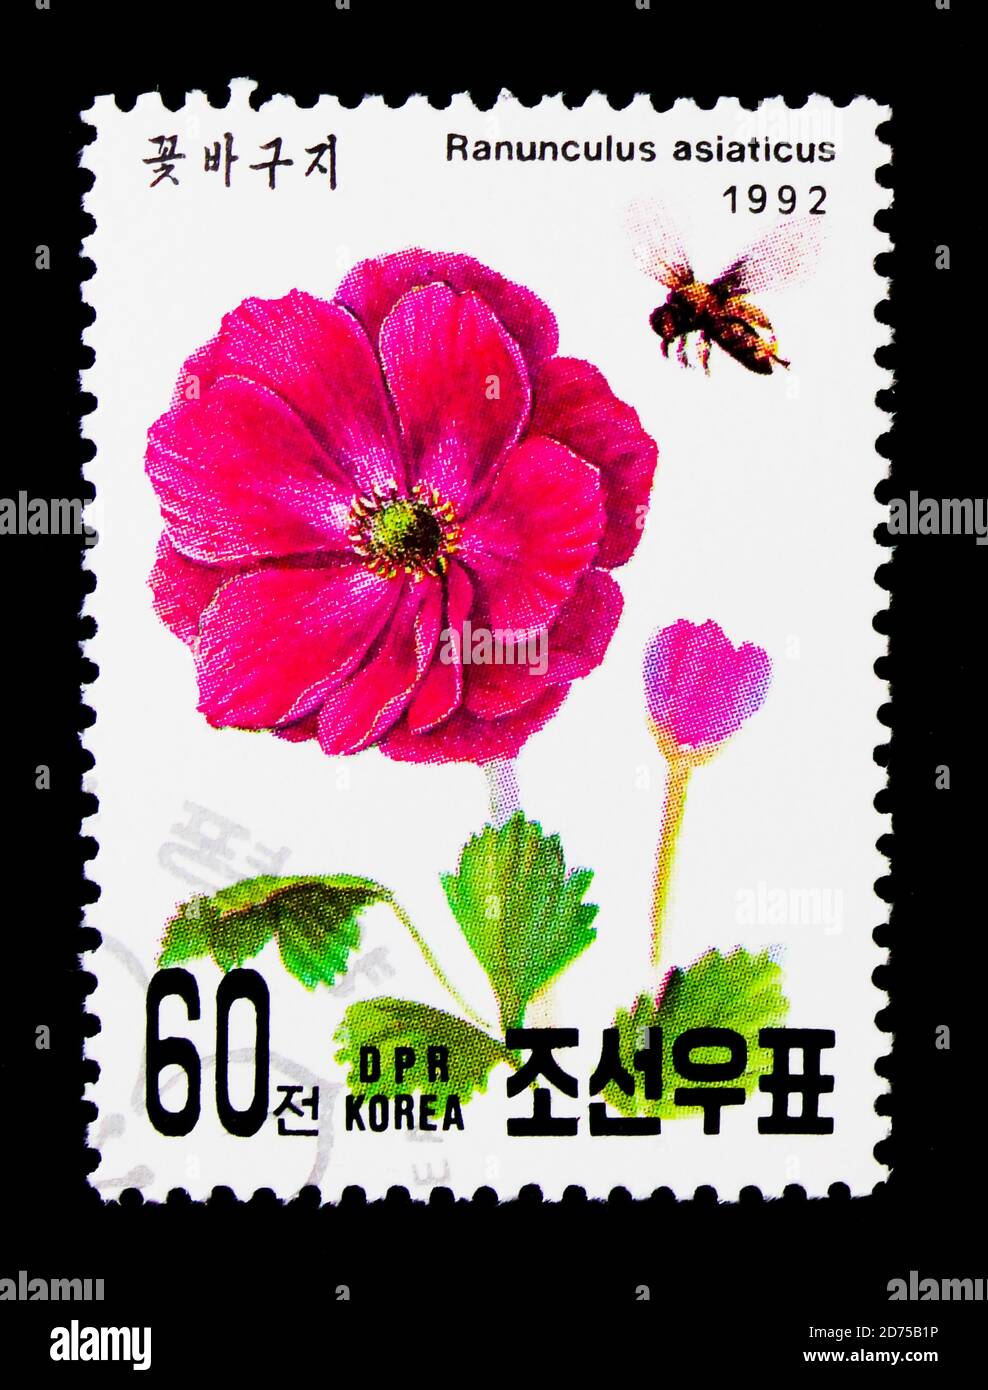 MOSCOU, RUSSIE - 25 NOVEMBRE 2017 : un timbre imprimé en république populaire démocratique de Corée montre Ranunculus asiticus, International Stamp Exhititititititi Banque D'Images